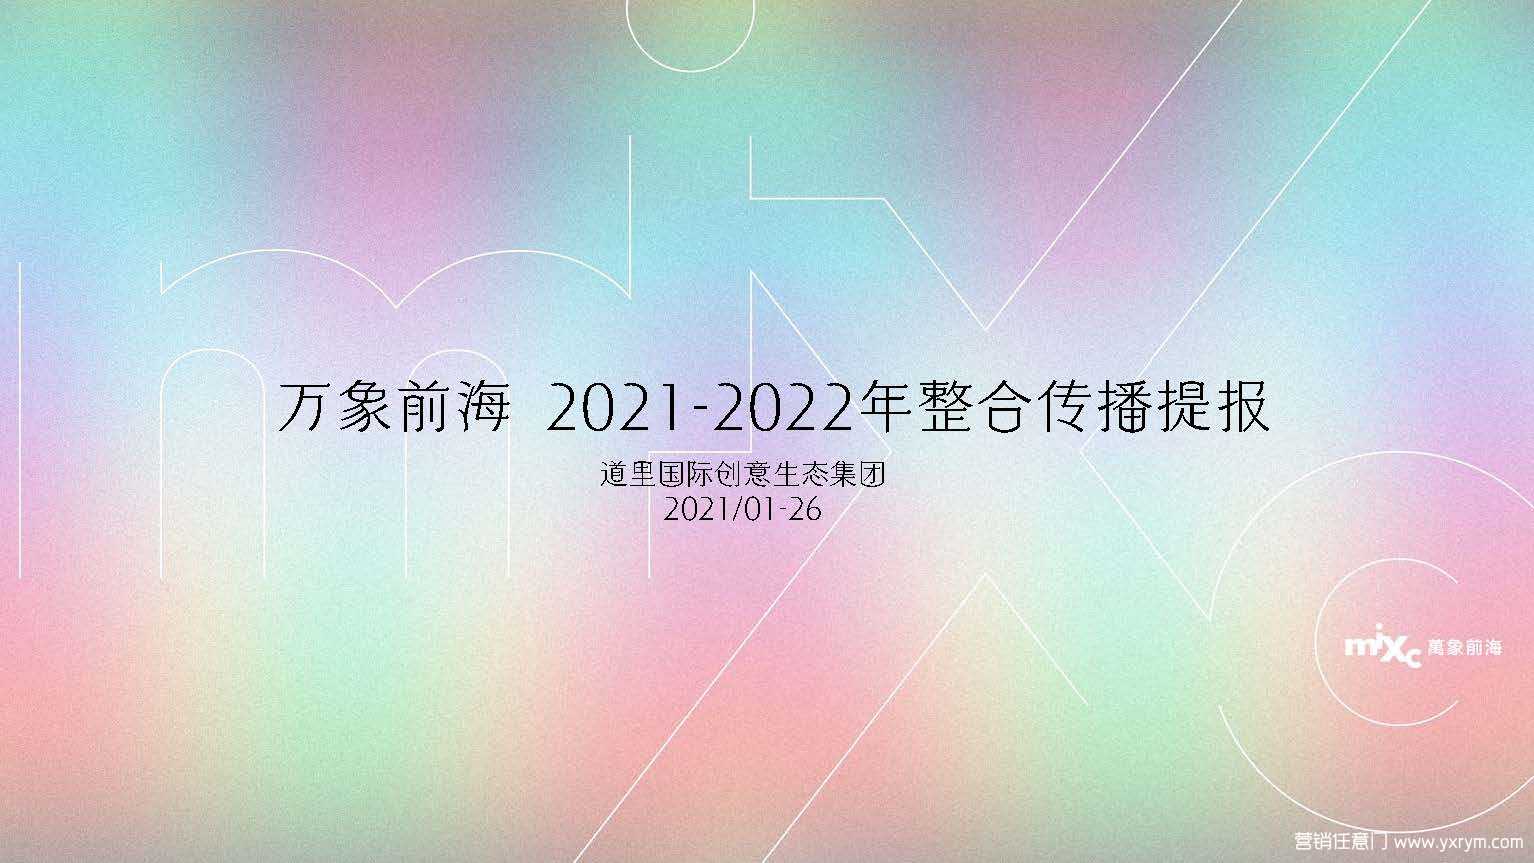 【营销任意门】华润万象前海2021-2022整合传播方案00